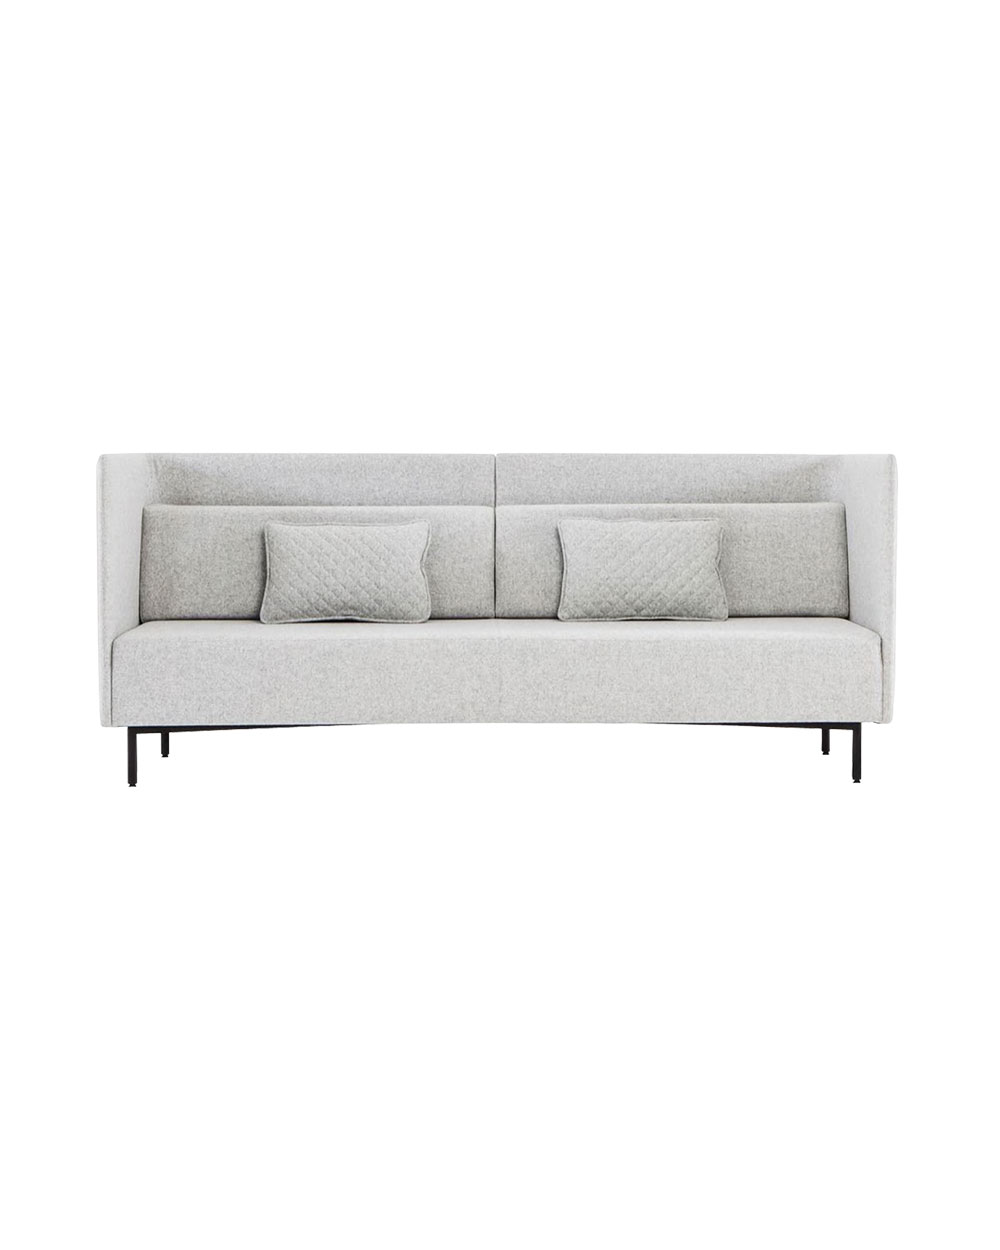 Simon James sofa, $4043